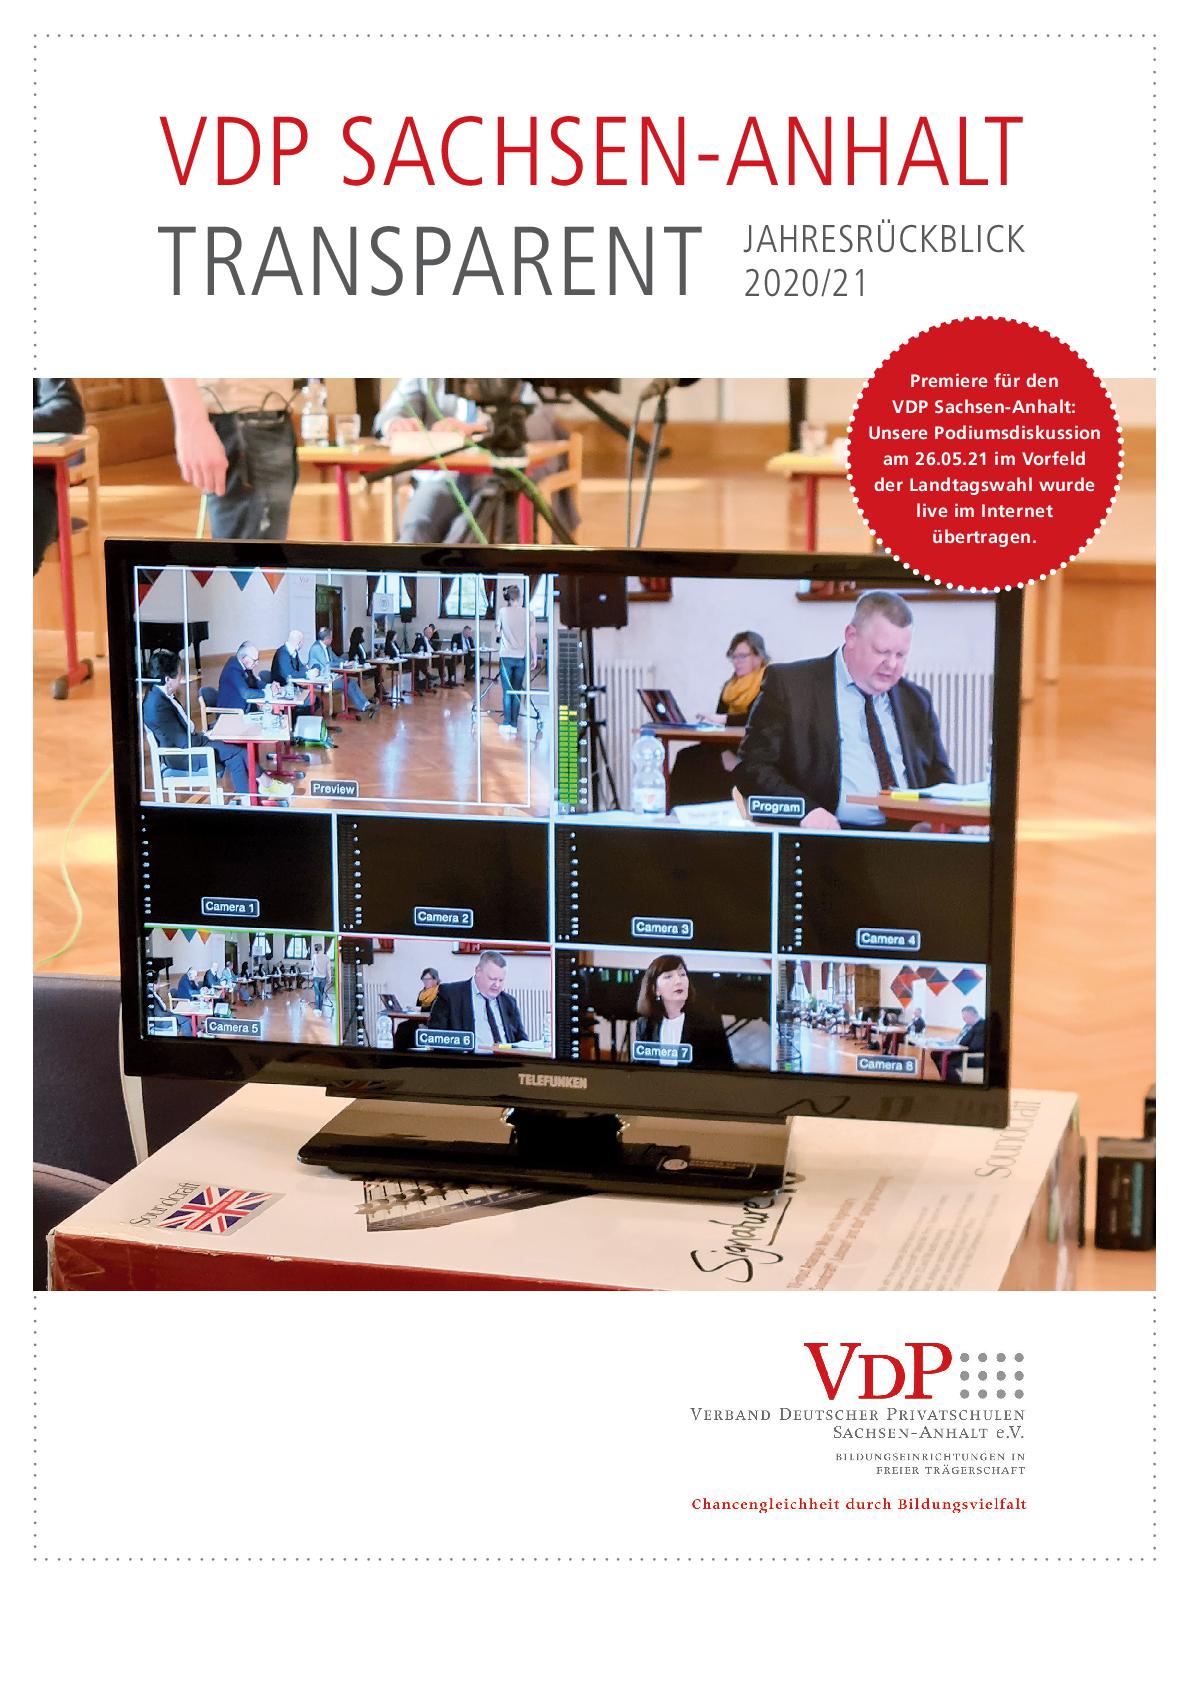 Endfassung VDP Transparent 2020 21 001